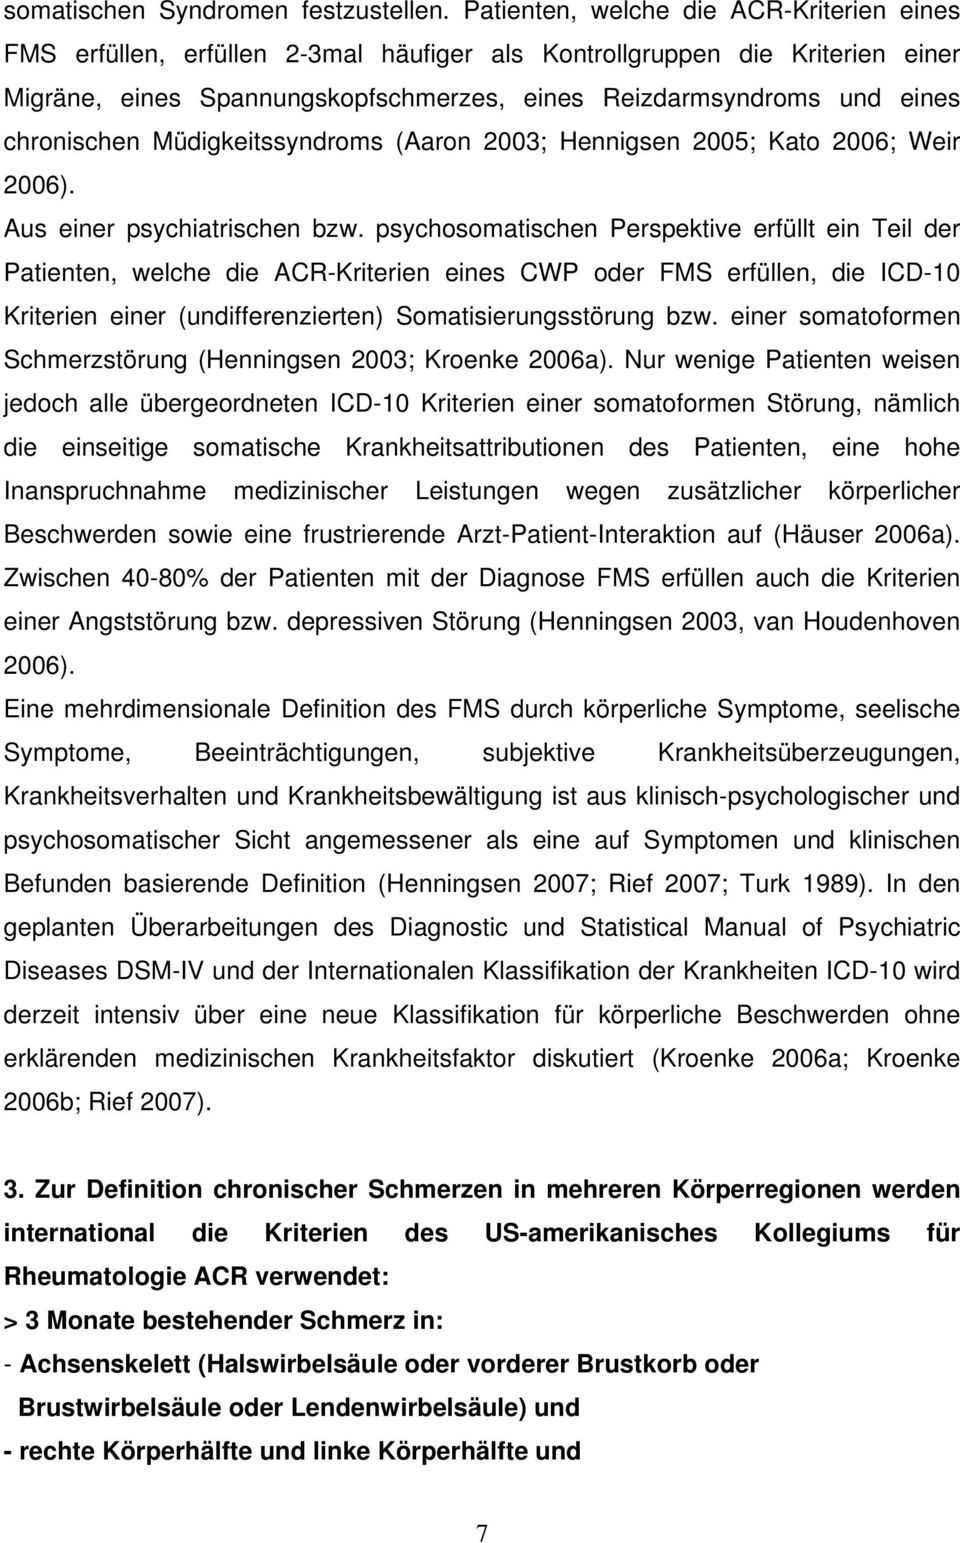 chronischen Müdigkeitssyndroms (Aaron 2003; Hennigsen 2005; Kato 2006; Weir 2006). Aus einer psychiatrischen bzw.